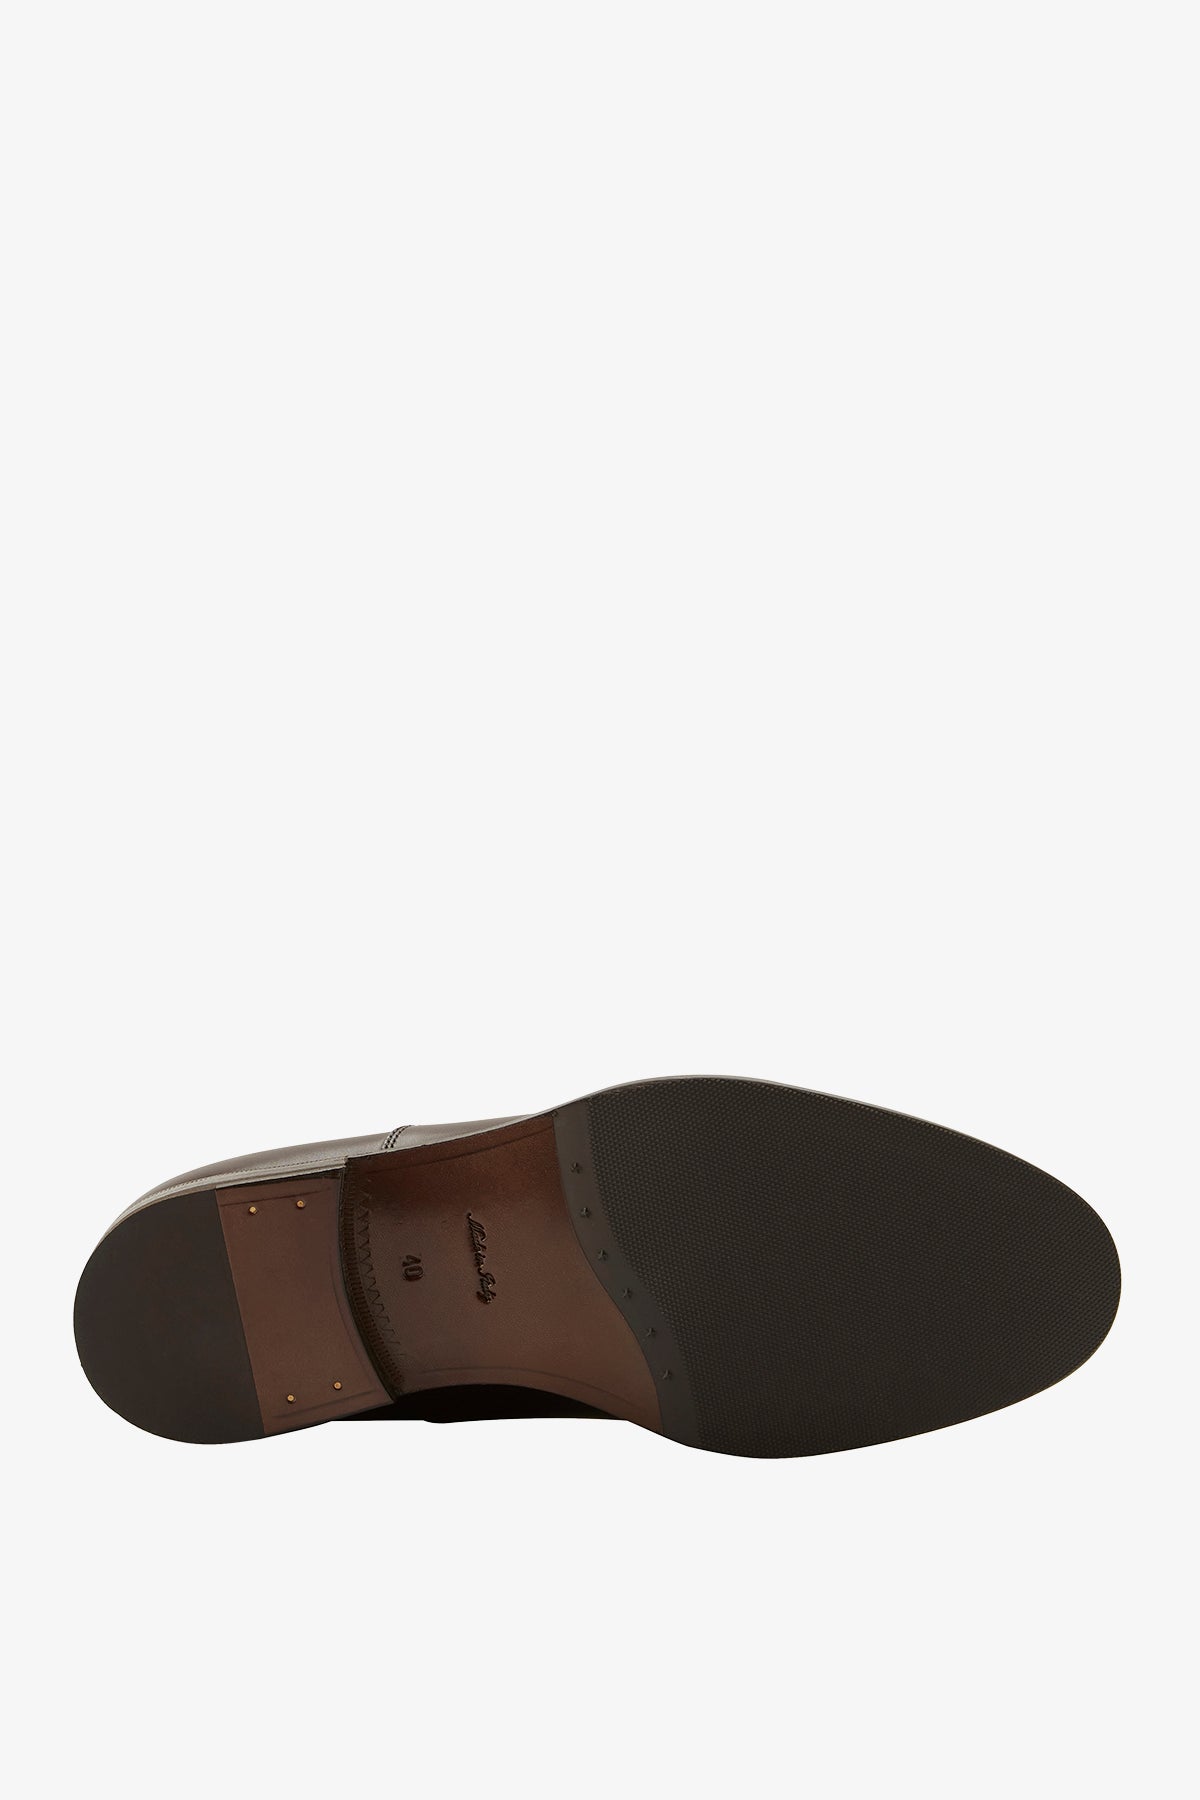 Oxford - Dark Brown Shoe